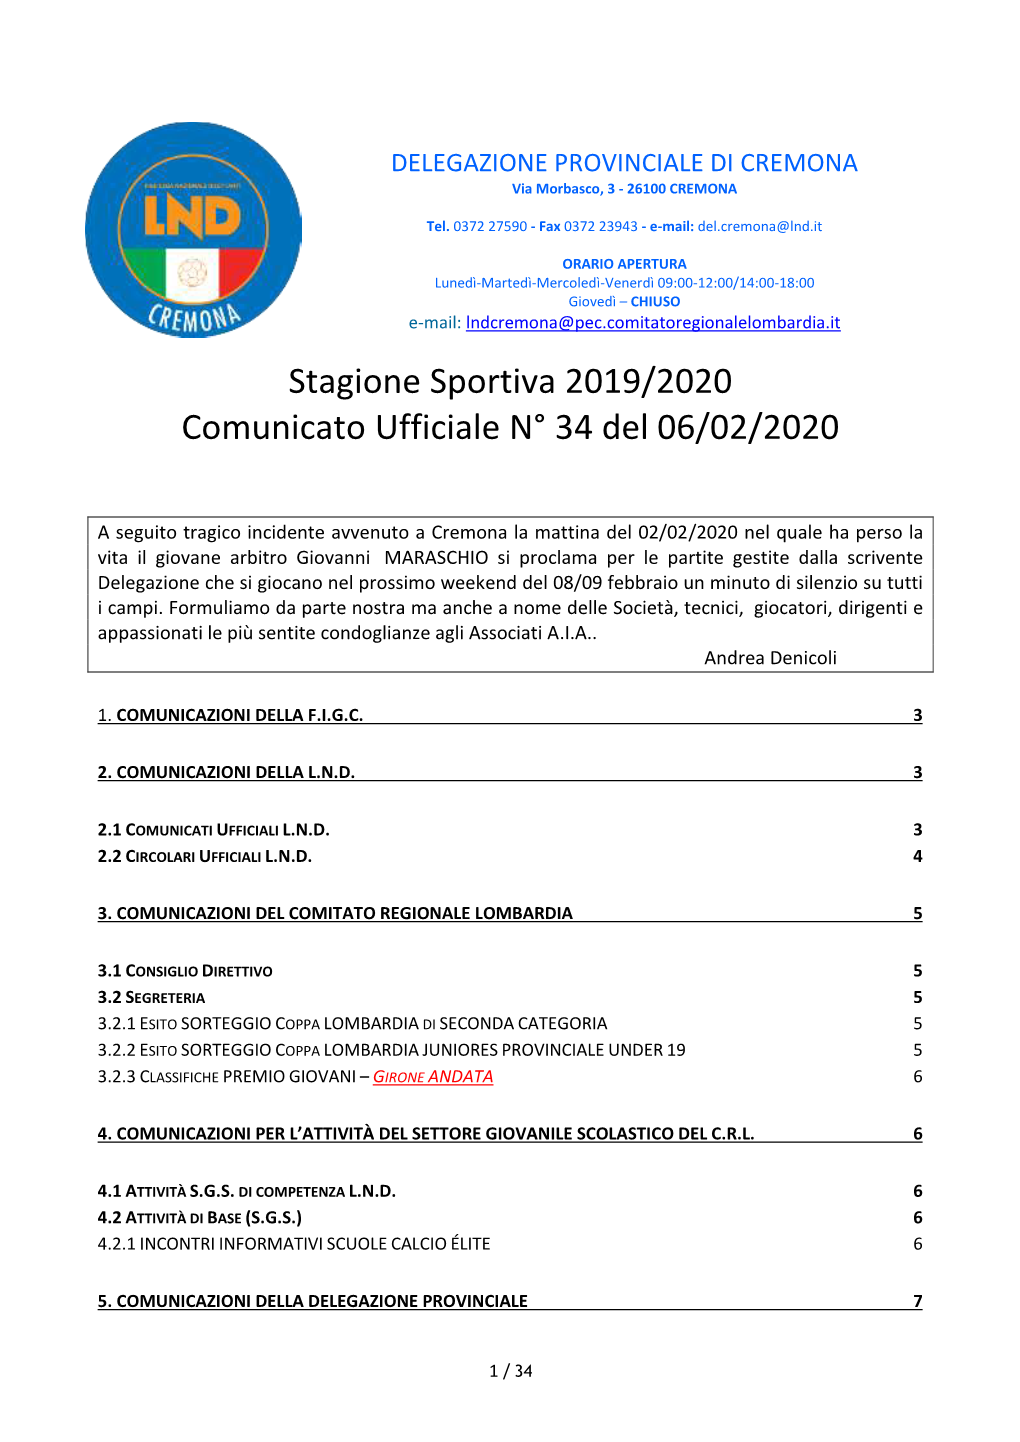 Stagione Sportiva 2019/2020 Comunicato Ufficiale N° 34 Del 06/02/2020